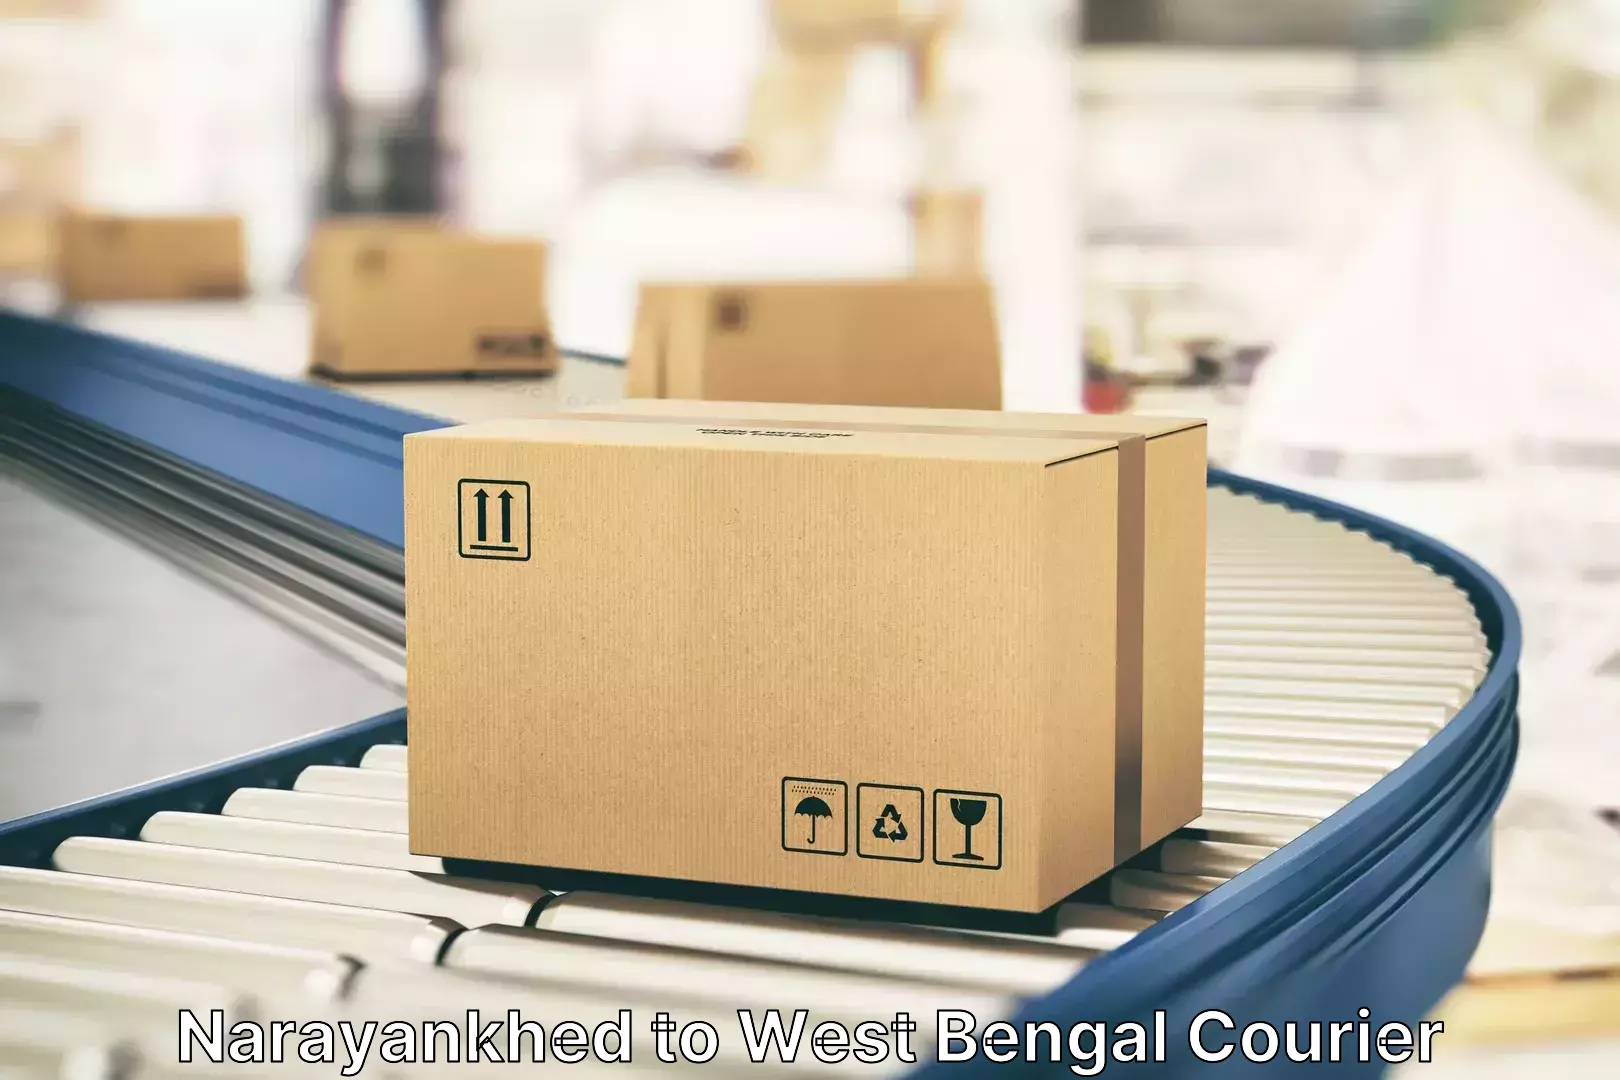 Baggage shipping experts Narayankhed to Bardhaman